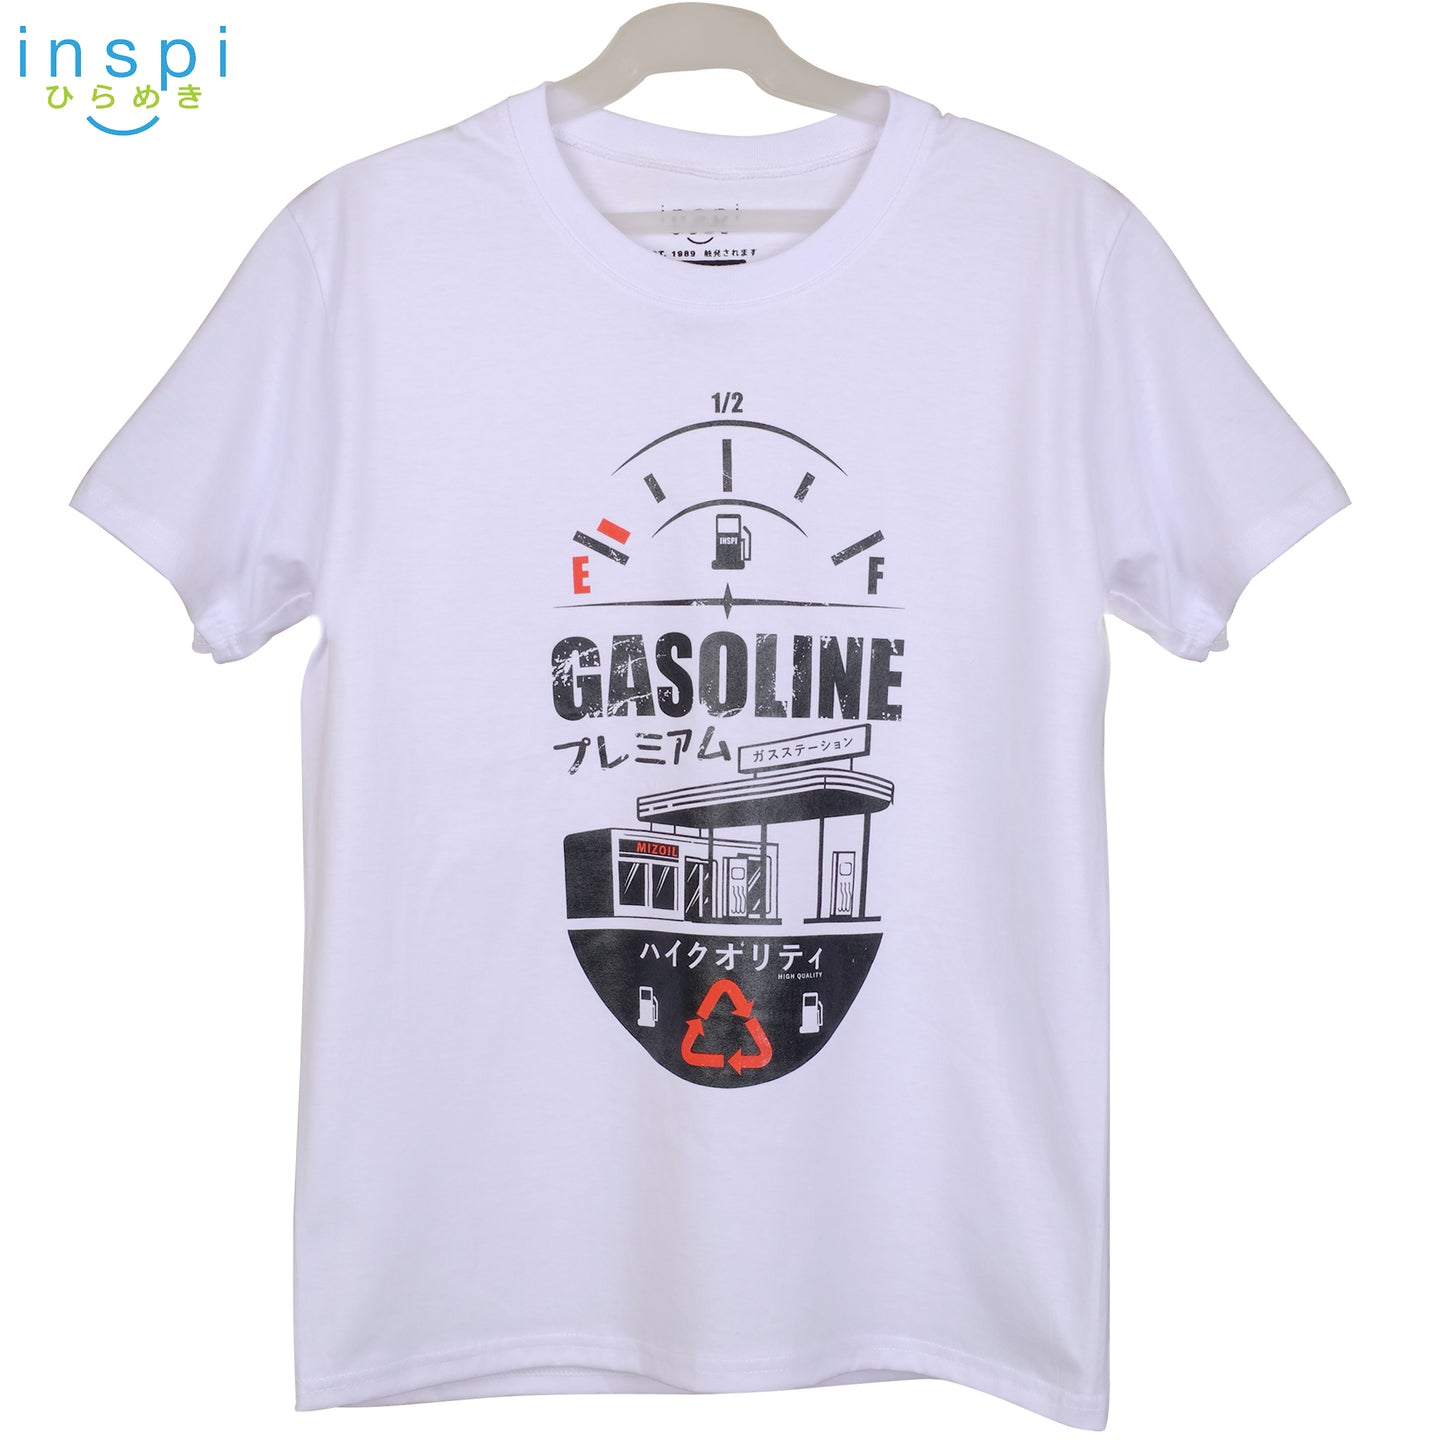 INSPI Tees Gasoline Graphic Tshirt